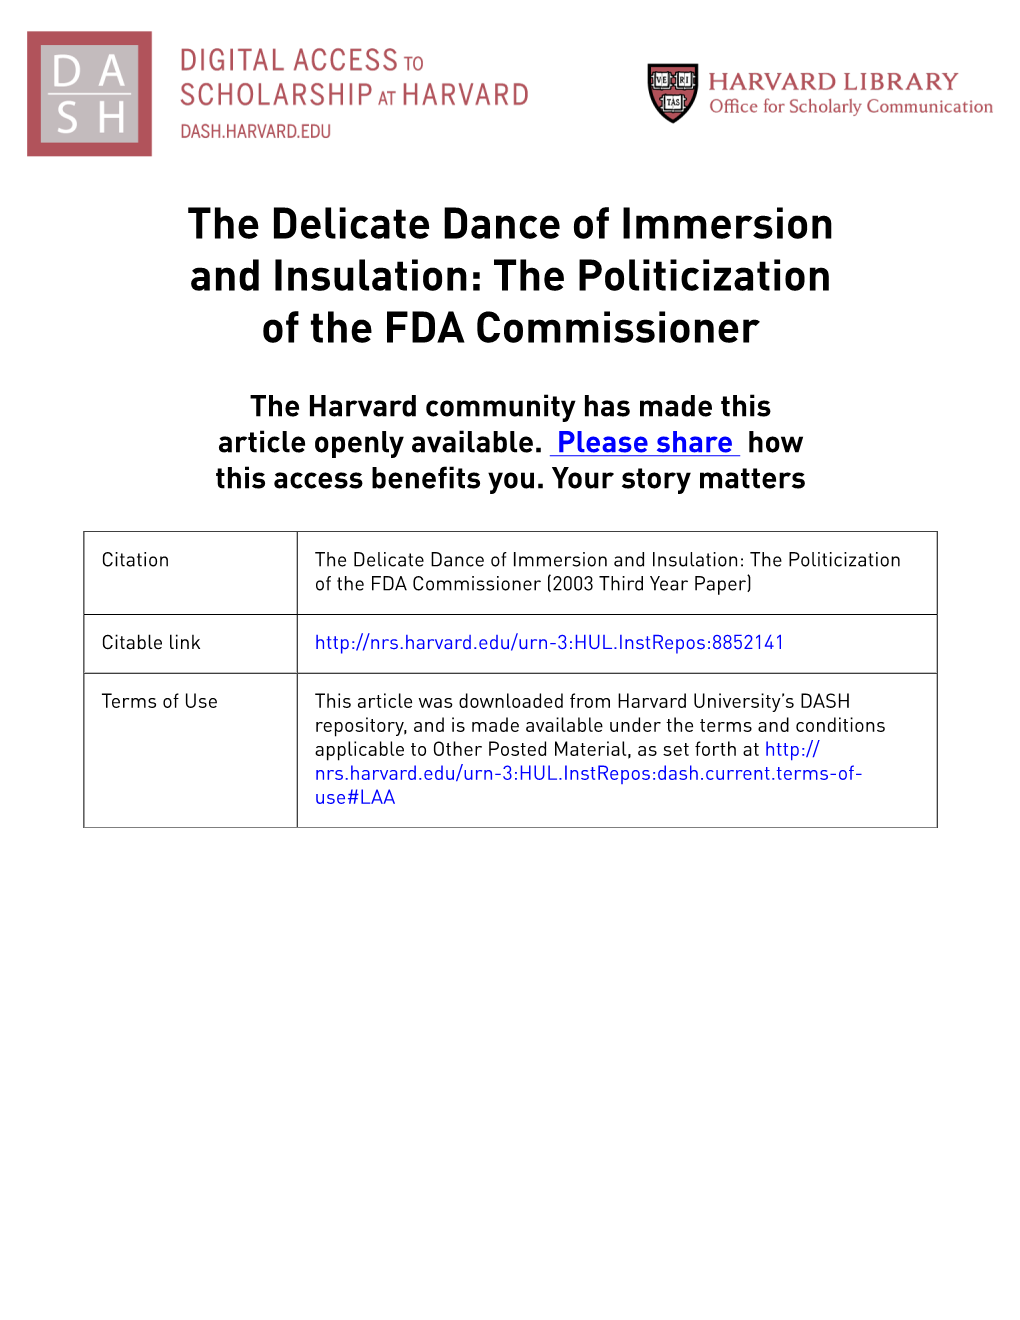 The Politicization of the FDA Commissioner